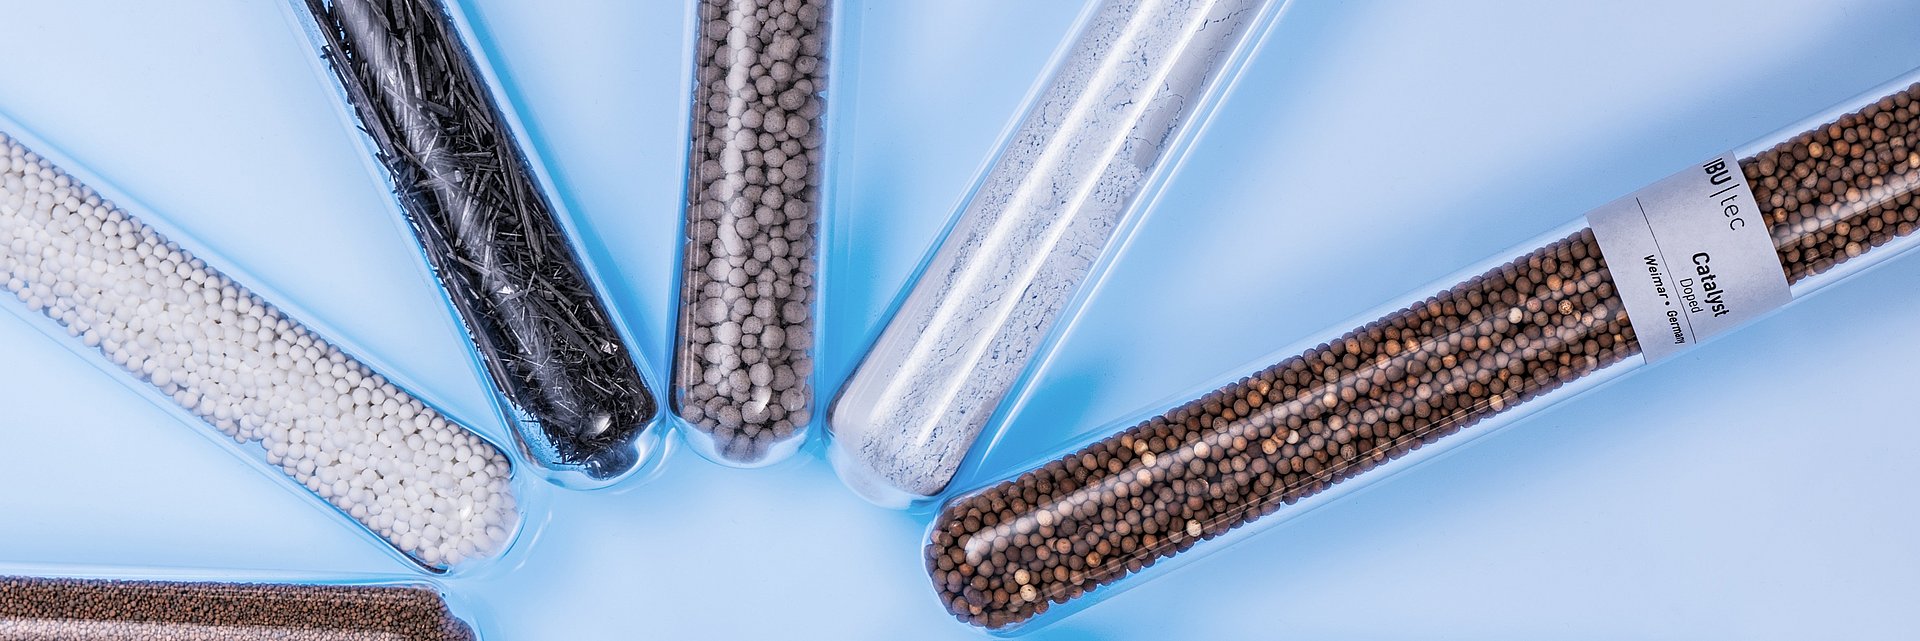 IBU-tec material samples in test tubes: carbon fibers, proppants and more